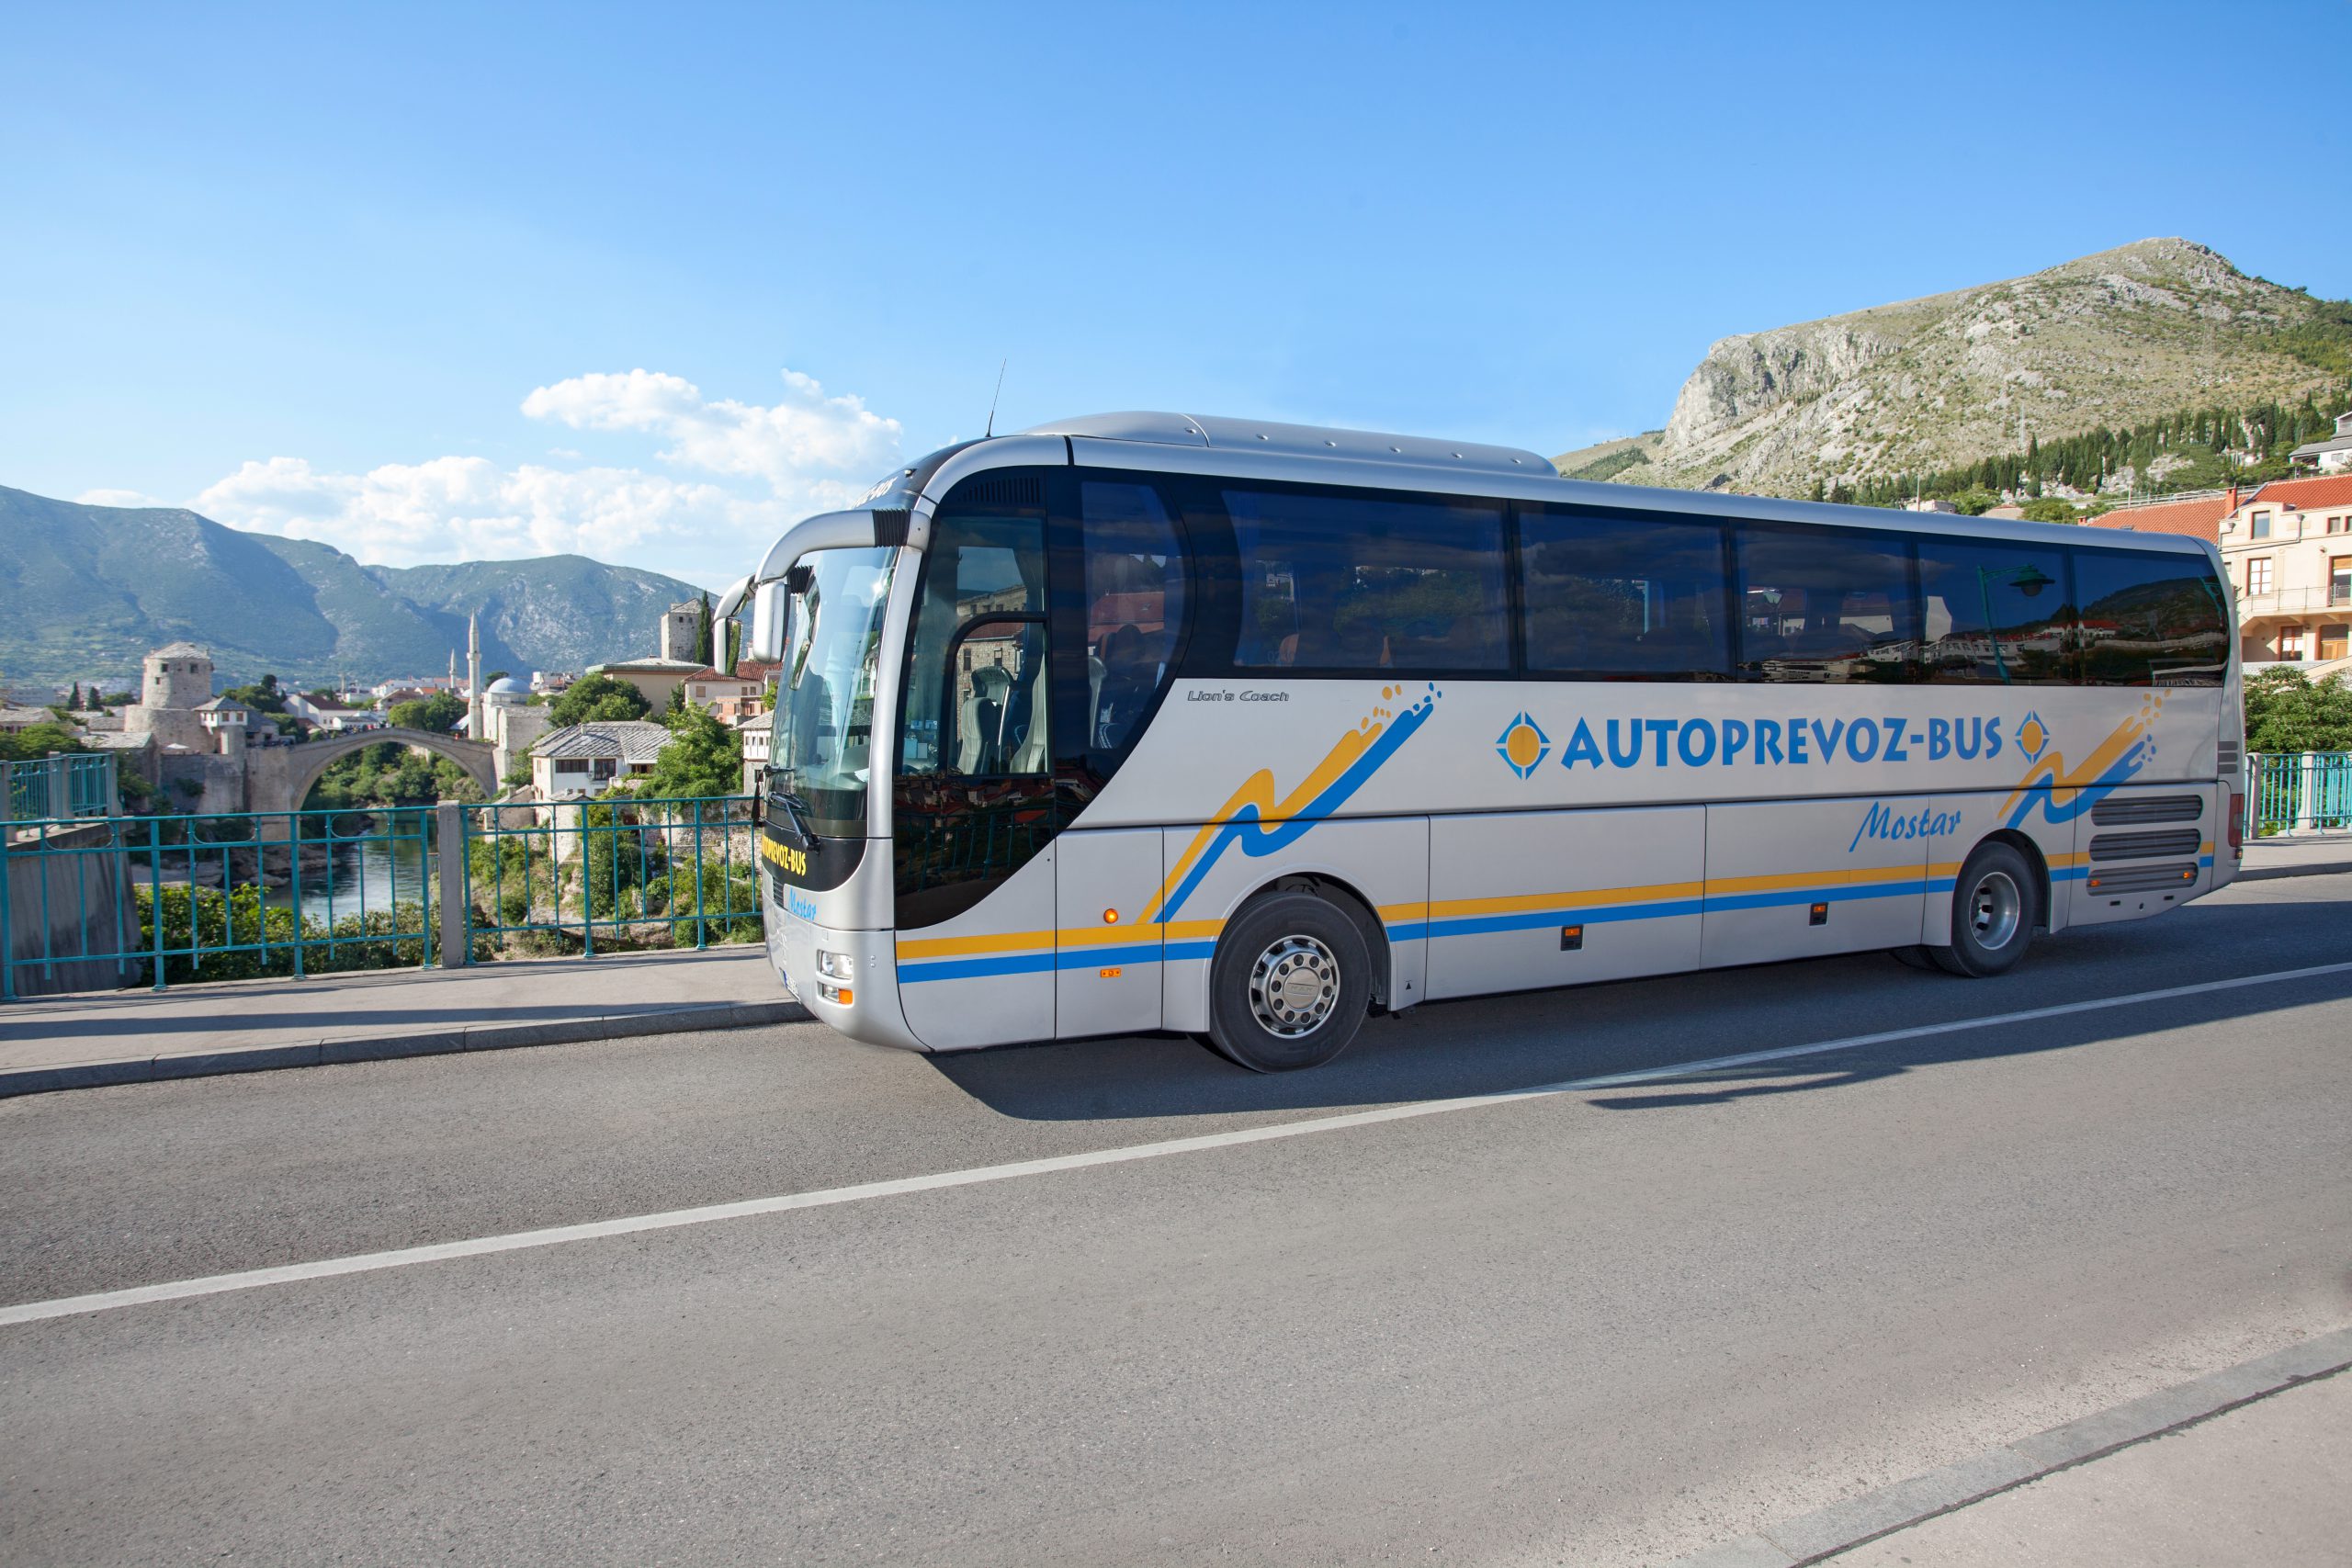 Autoprevoz-bus autobus MAN - Lions Coach